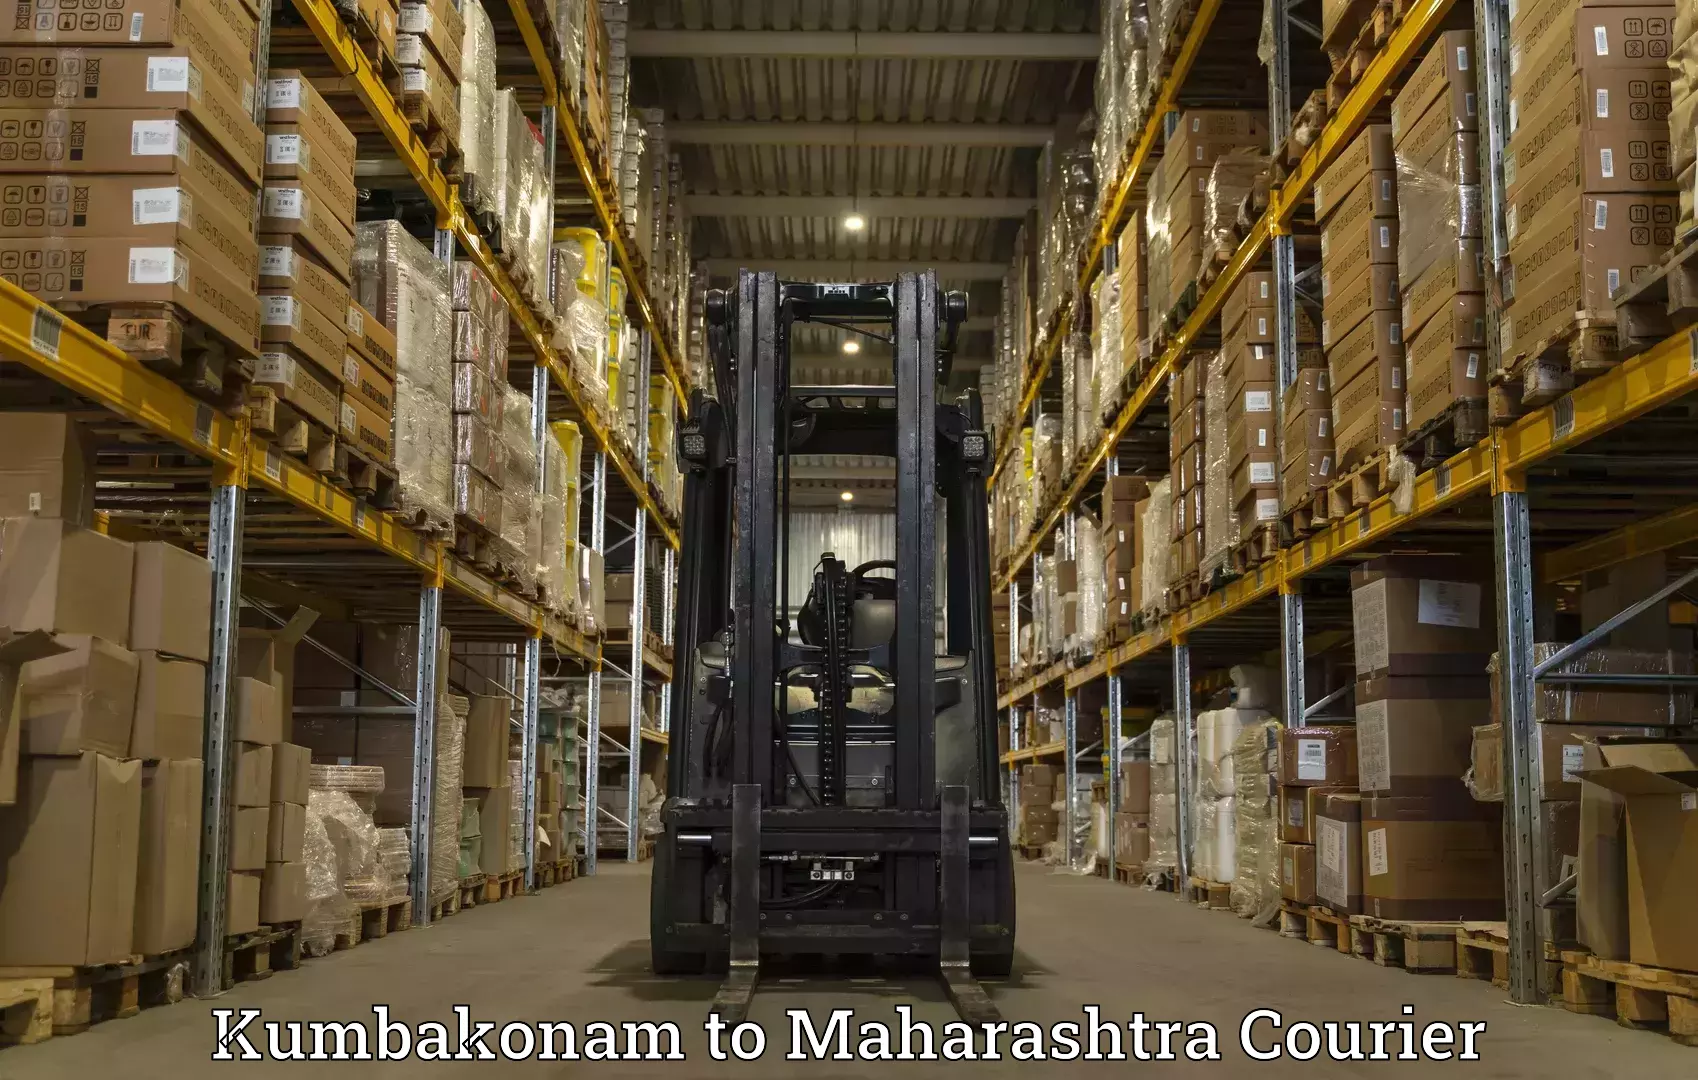 Doorstep delivery service Kumbakonam to Maharashtra